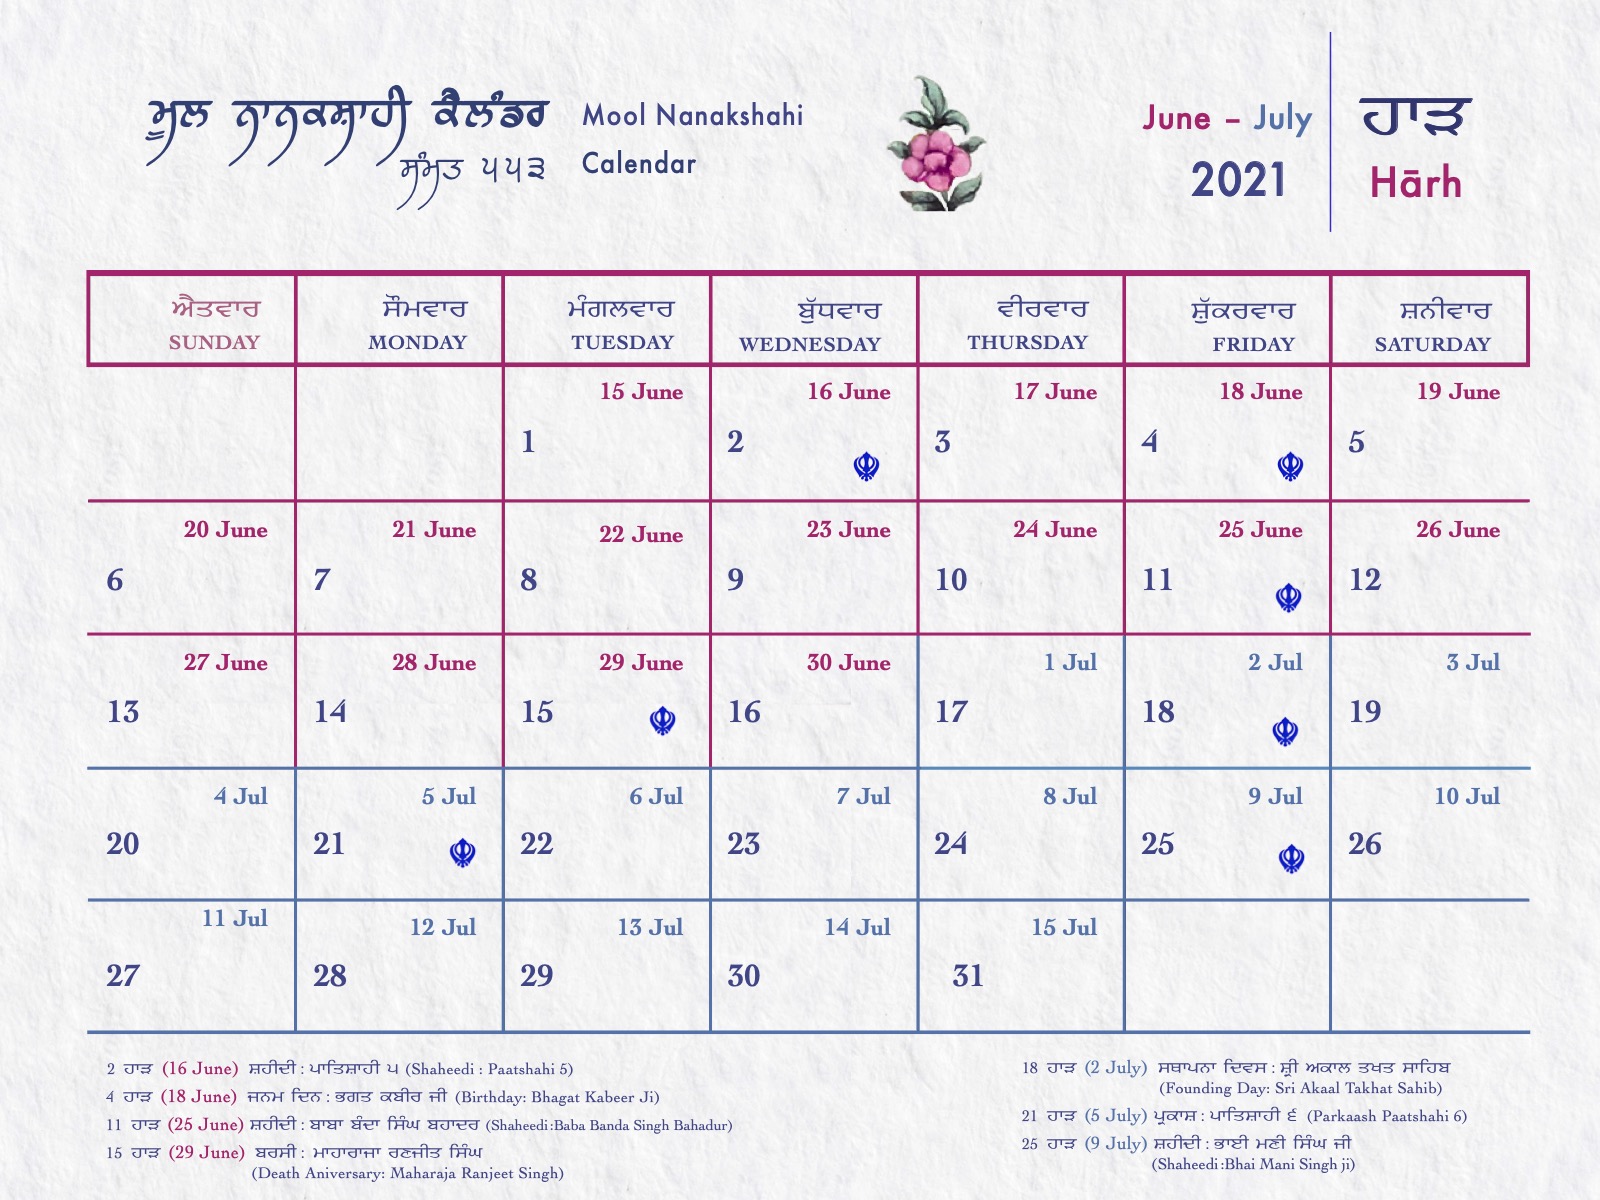 Mool Nanakshahi Calendar The Sikh Calendar Based On Gurbani, Sikh